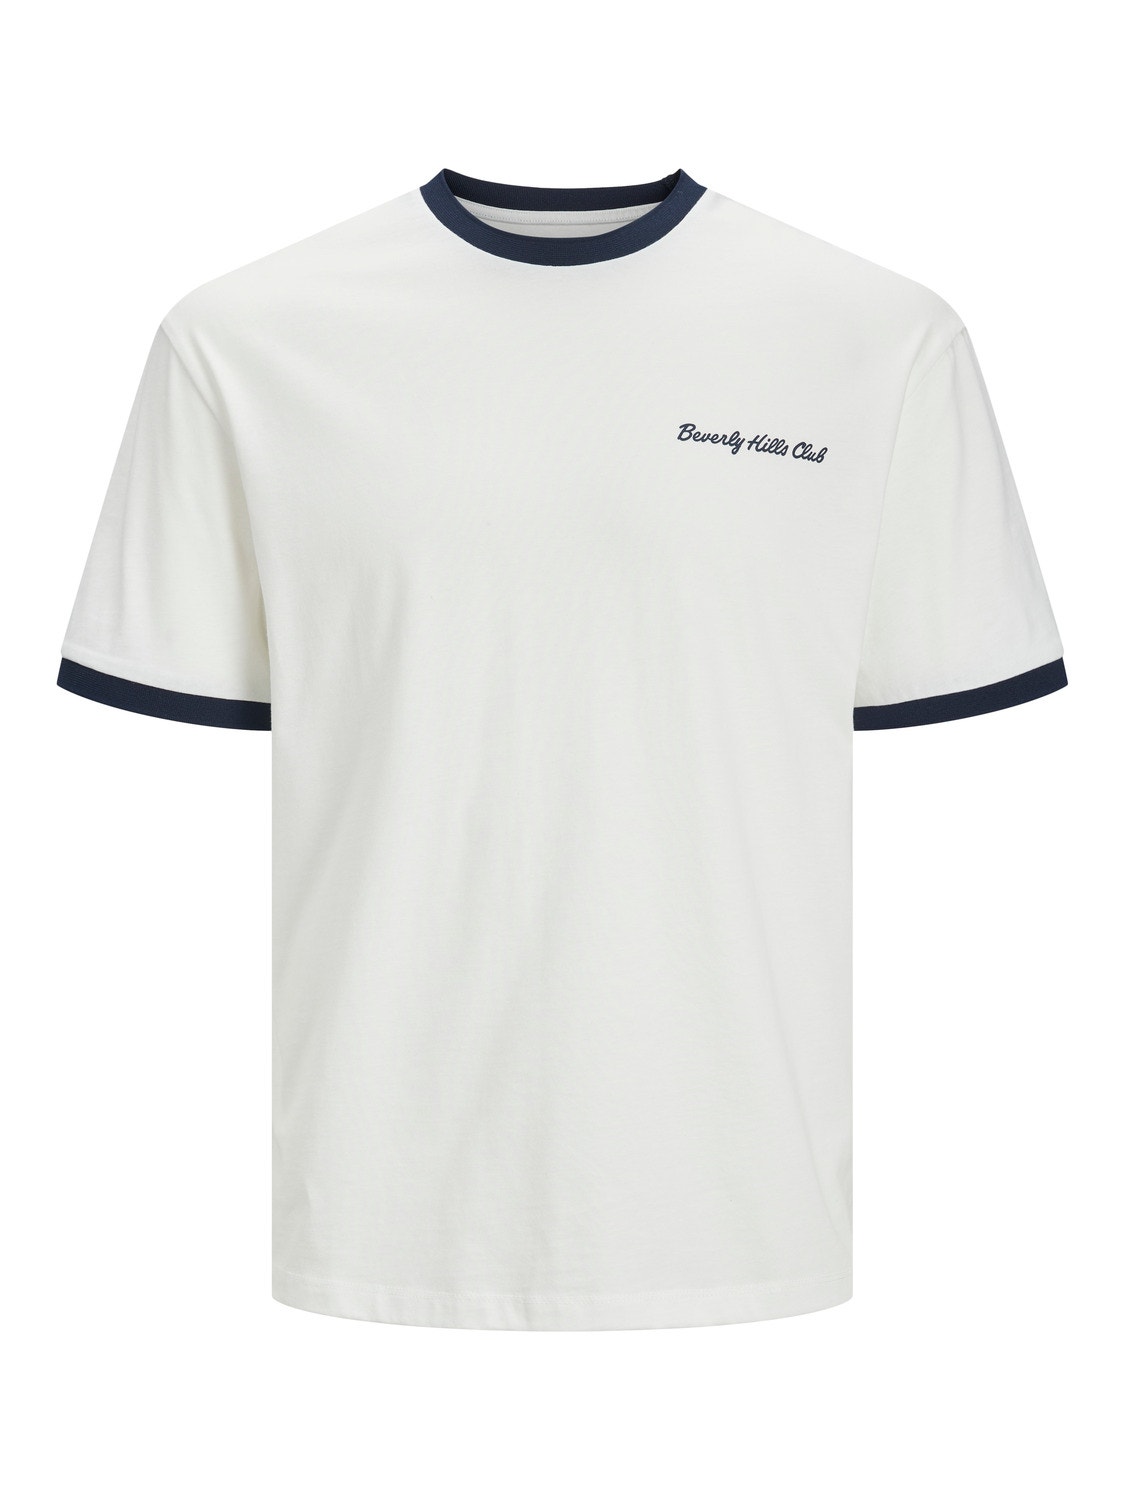 Jack & Jones Gedruckt Rundhals T-shirt -Cloud Dancer - 12237453